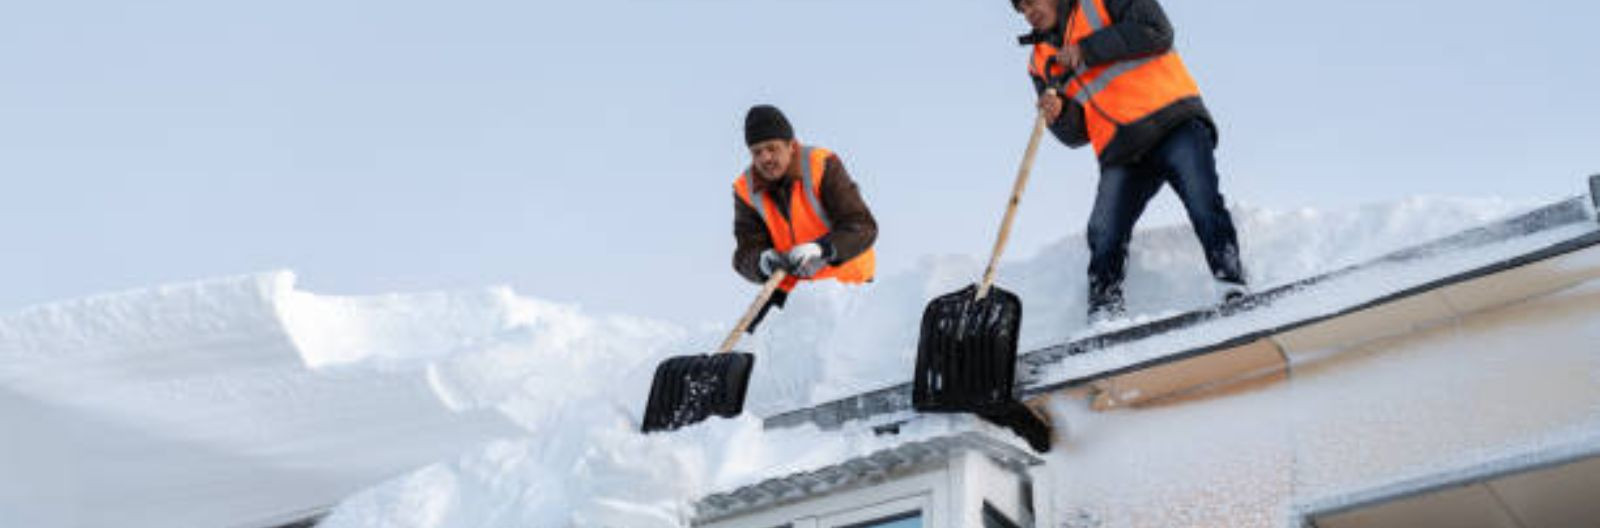 Katuste puhastamine lumest on oluline talvise hoolduse element, mida ei tohiks alahinnata. Siin on mõned põhjused, miks on oluline eemaldada lumekatustelt lumi: